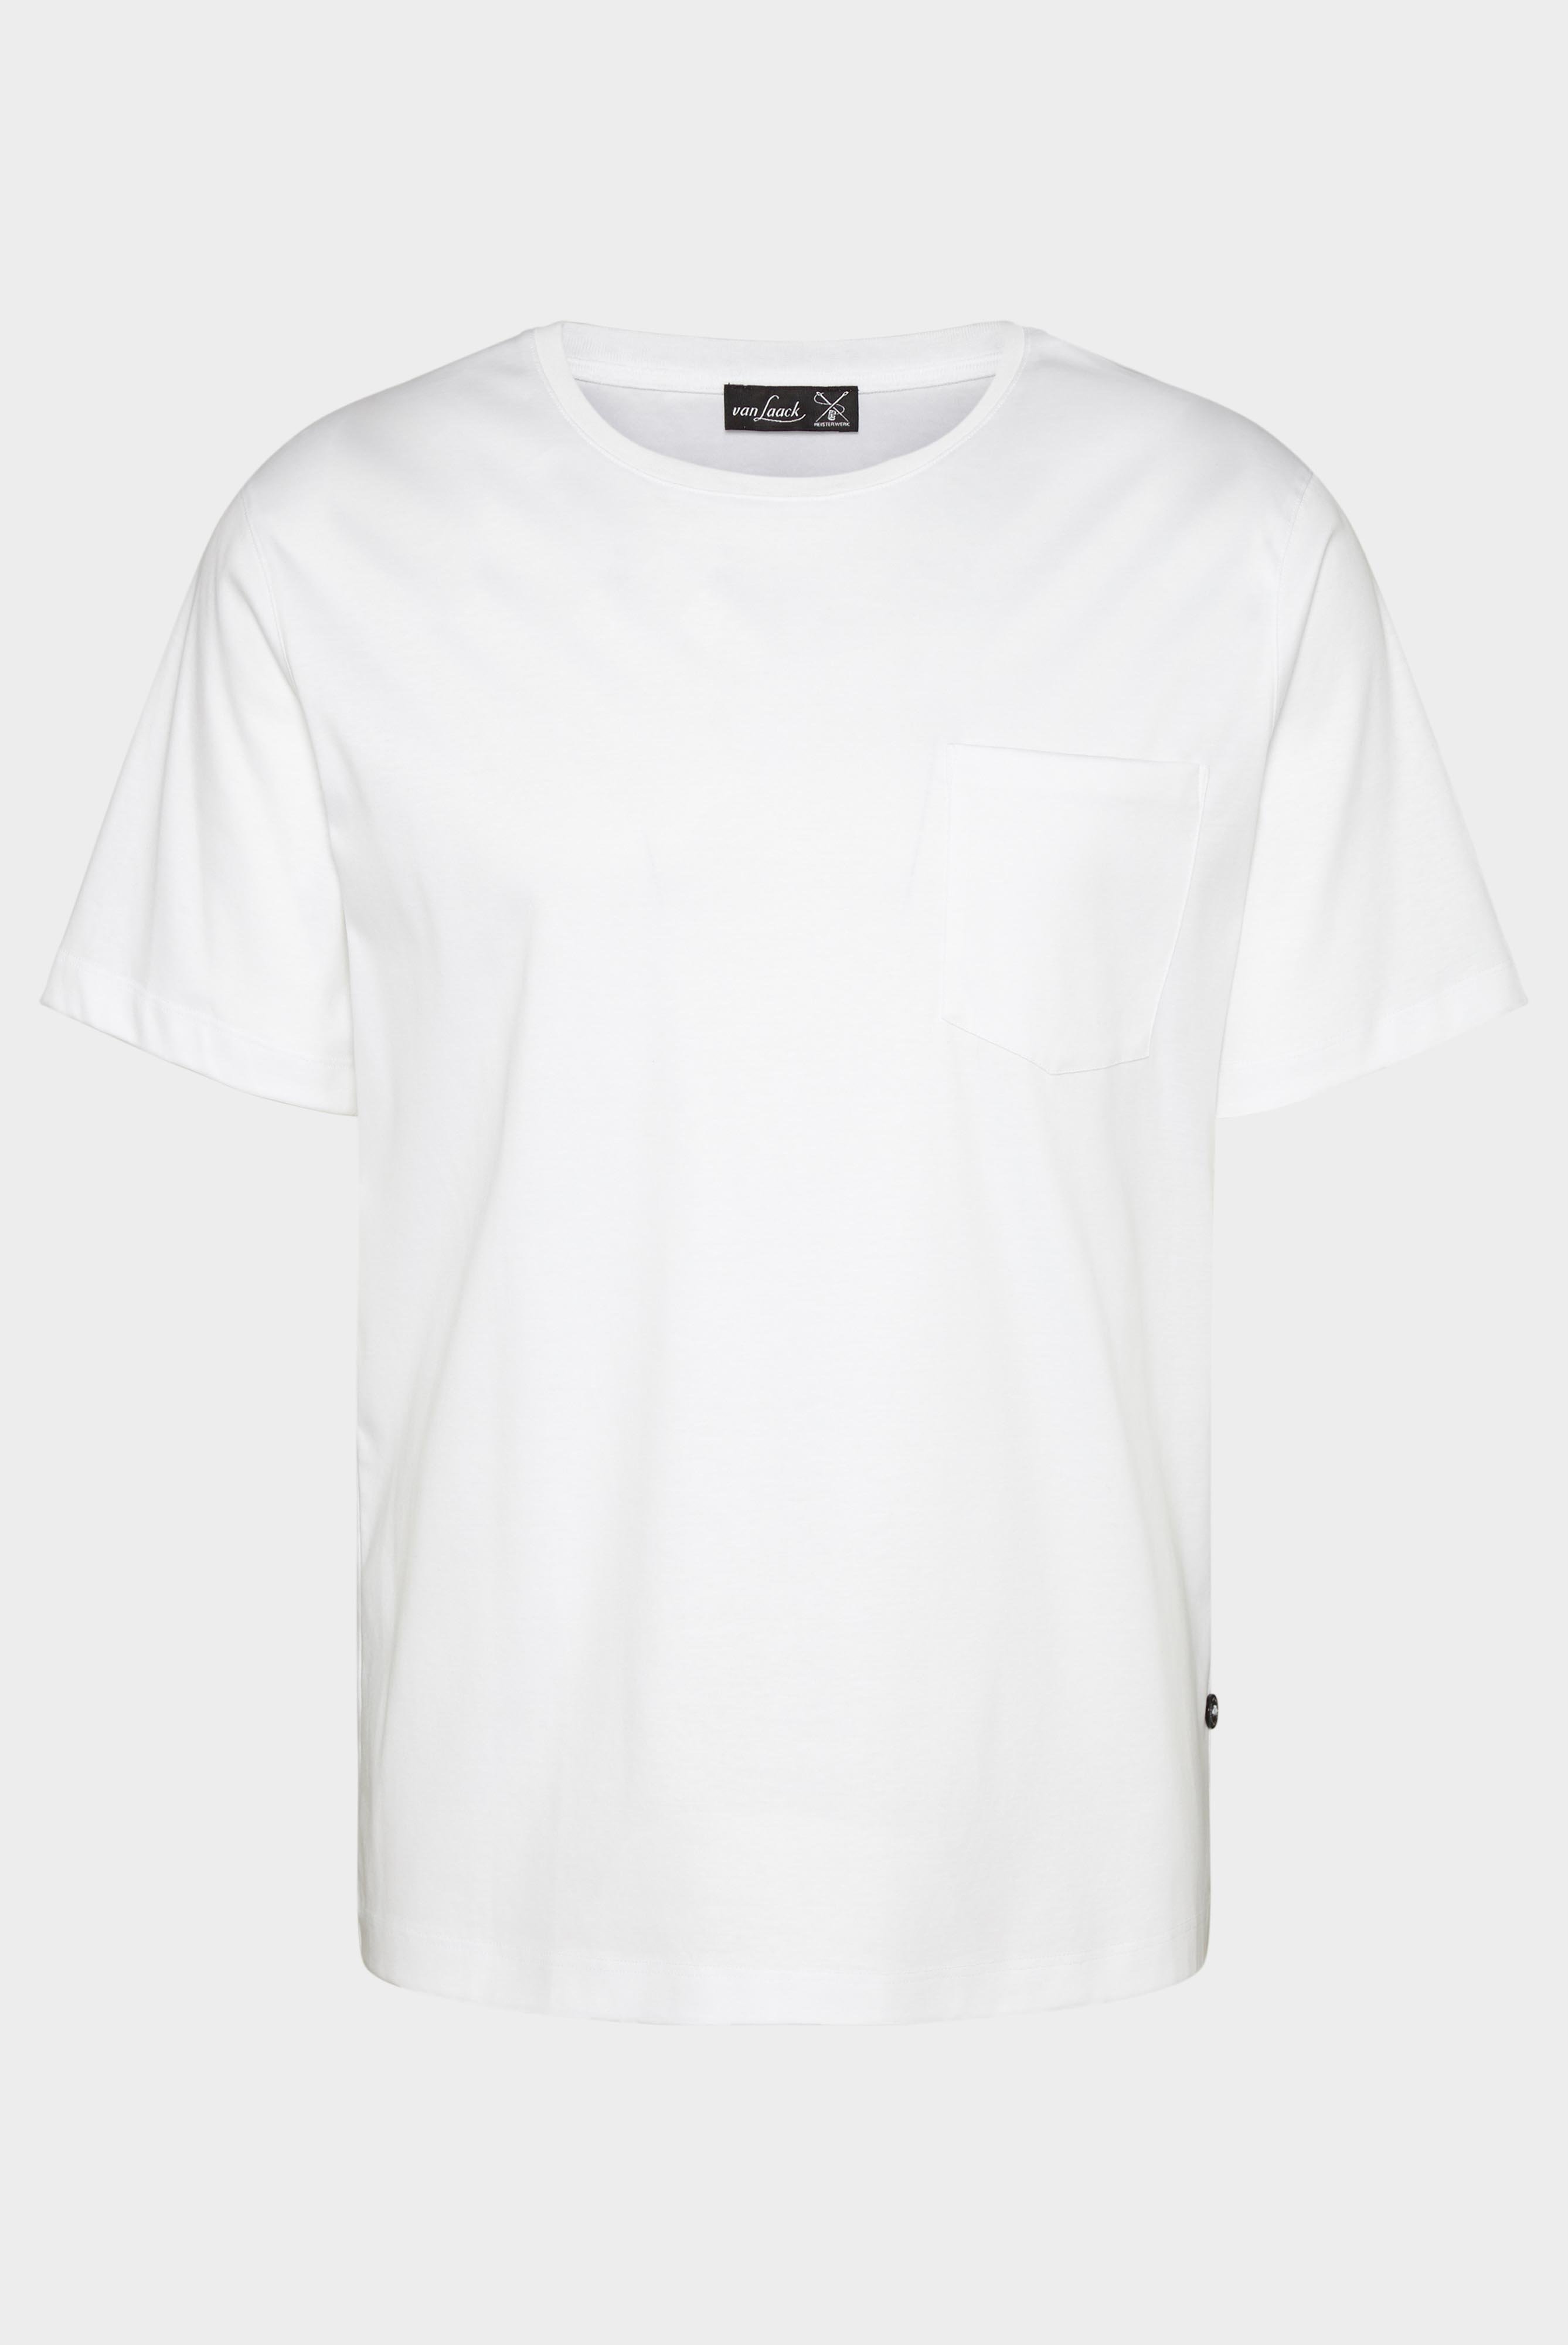 T-Shirts+Oversize Jersey T-Shirt mit Brusttasche+20.1776.GZ.180031.000.L